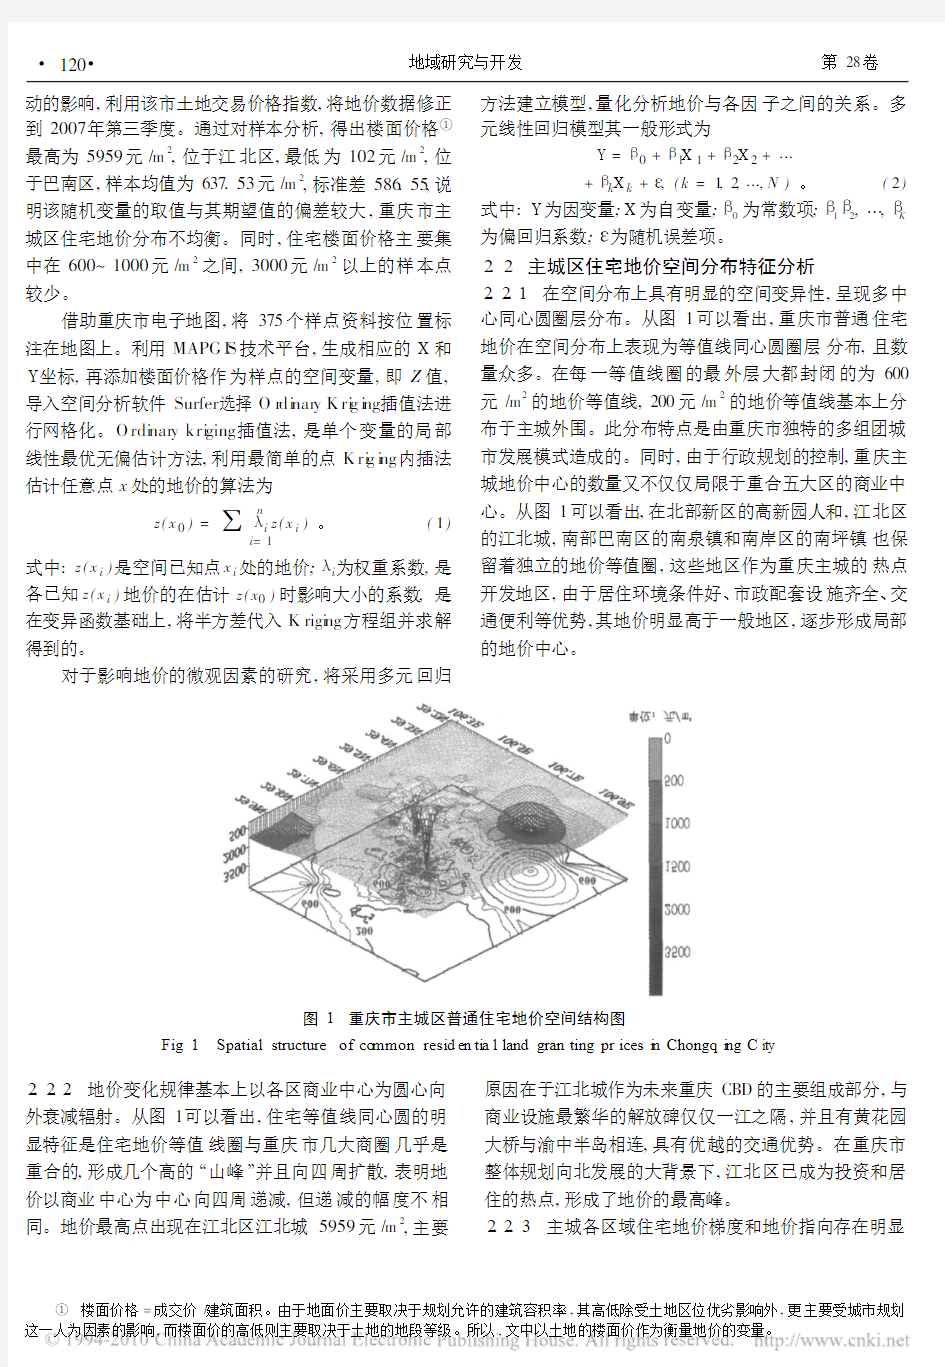 重庆市普通住宅地价空间分布与影响因素研究